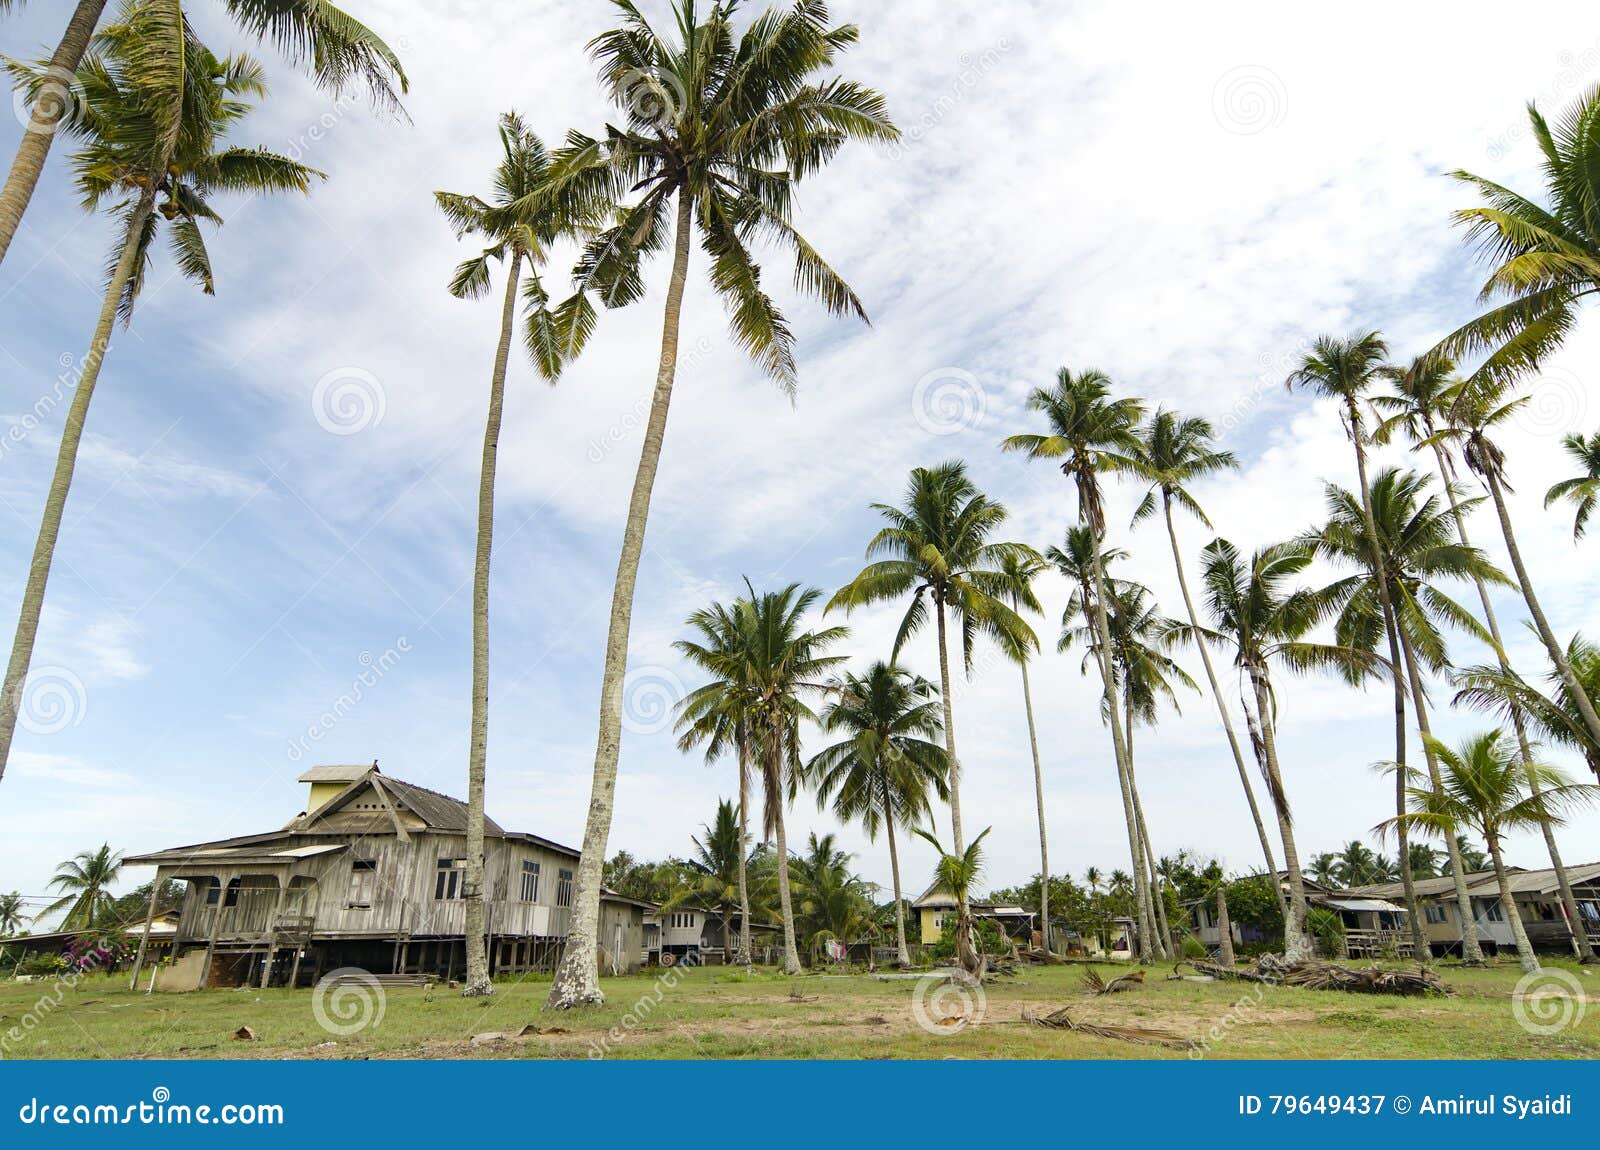 Beautiful Village Scenery Located in Terengganu, Malaysia. Stock Image ...